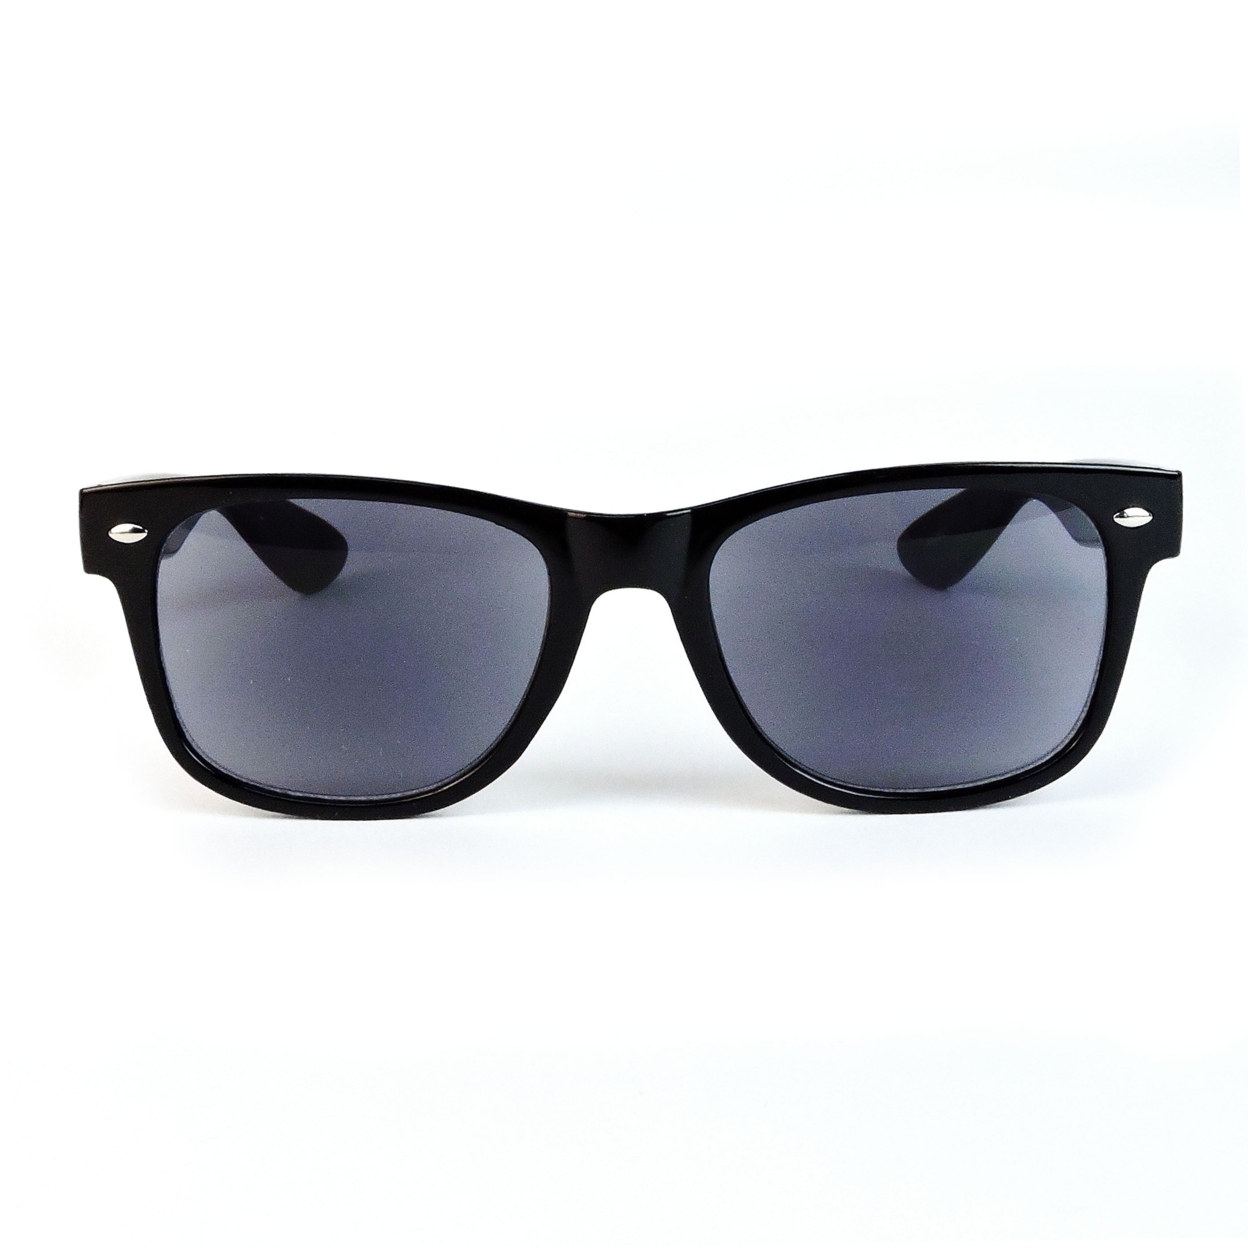 Sun Readers Full Lens Classic Frame 80's Retro Style Reading Sunglasses - Tortoise, +1.75